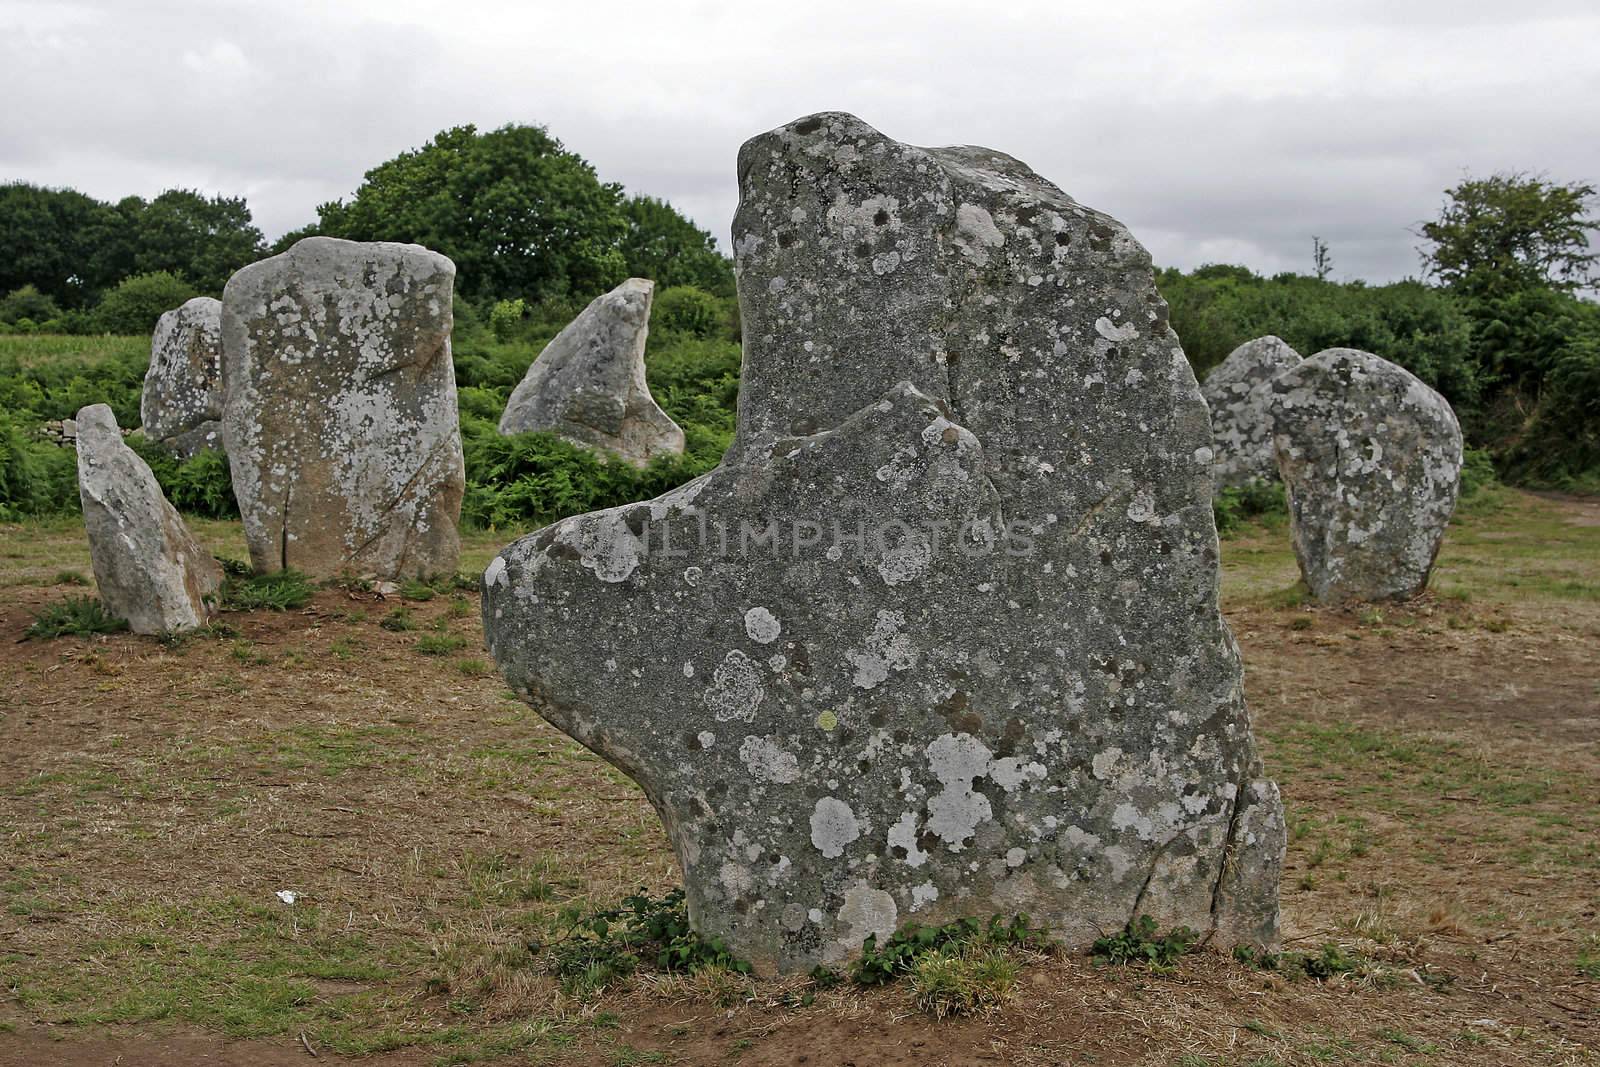 near Erdeven, Alignements de Kerzerho, Brittany, stone graves